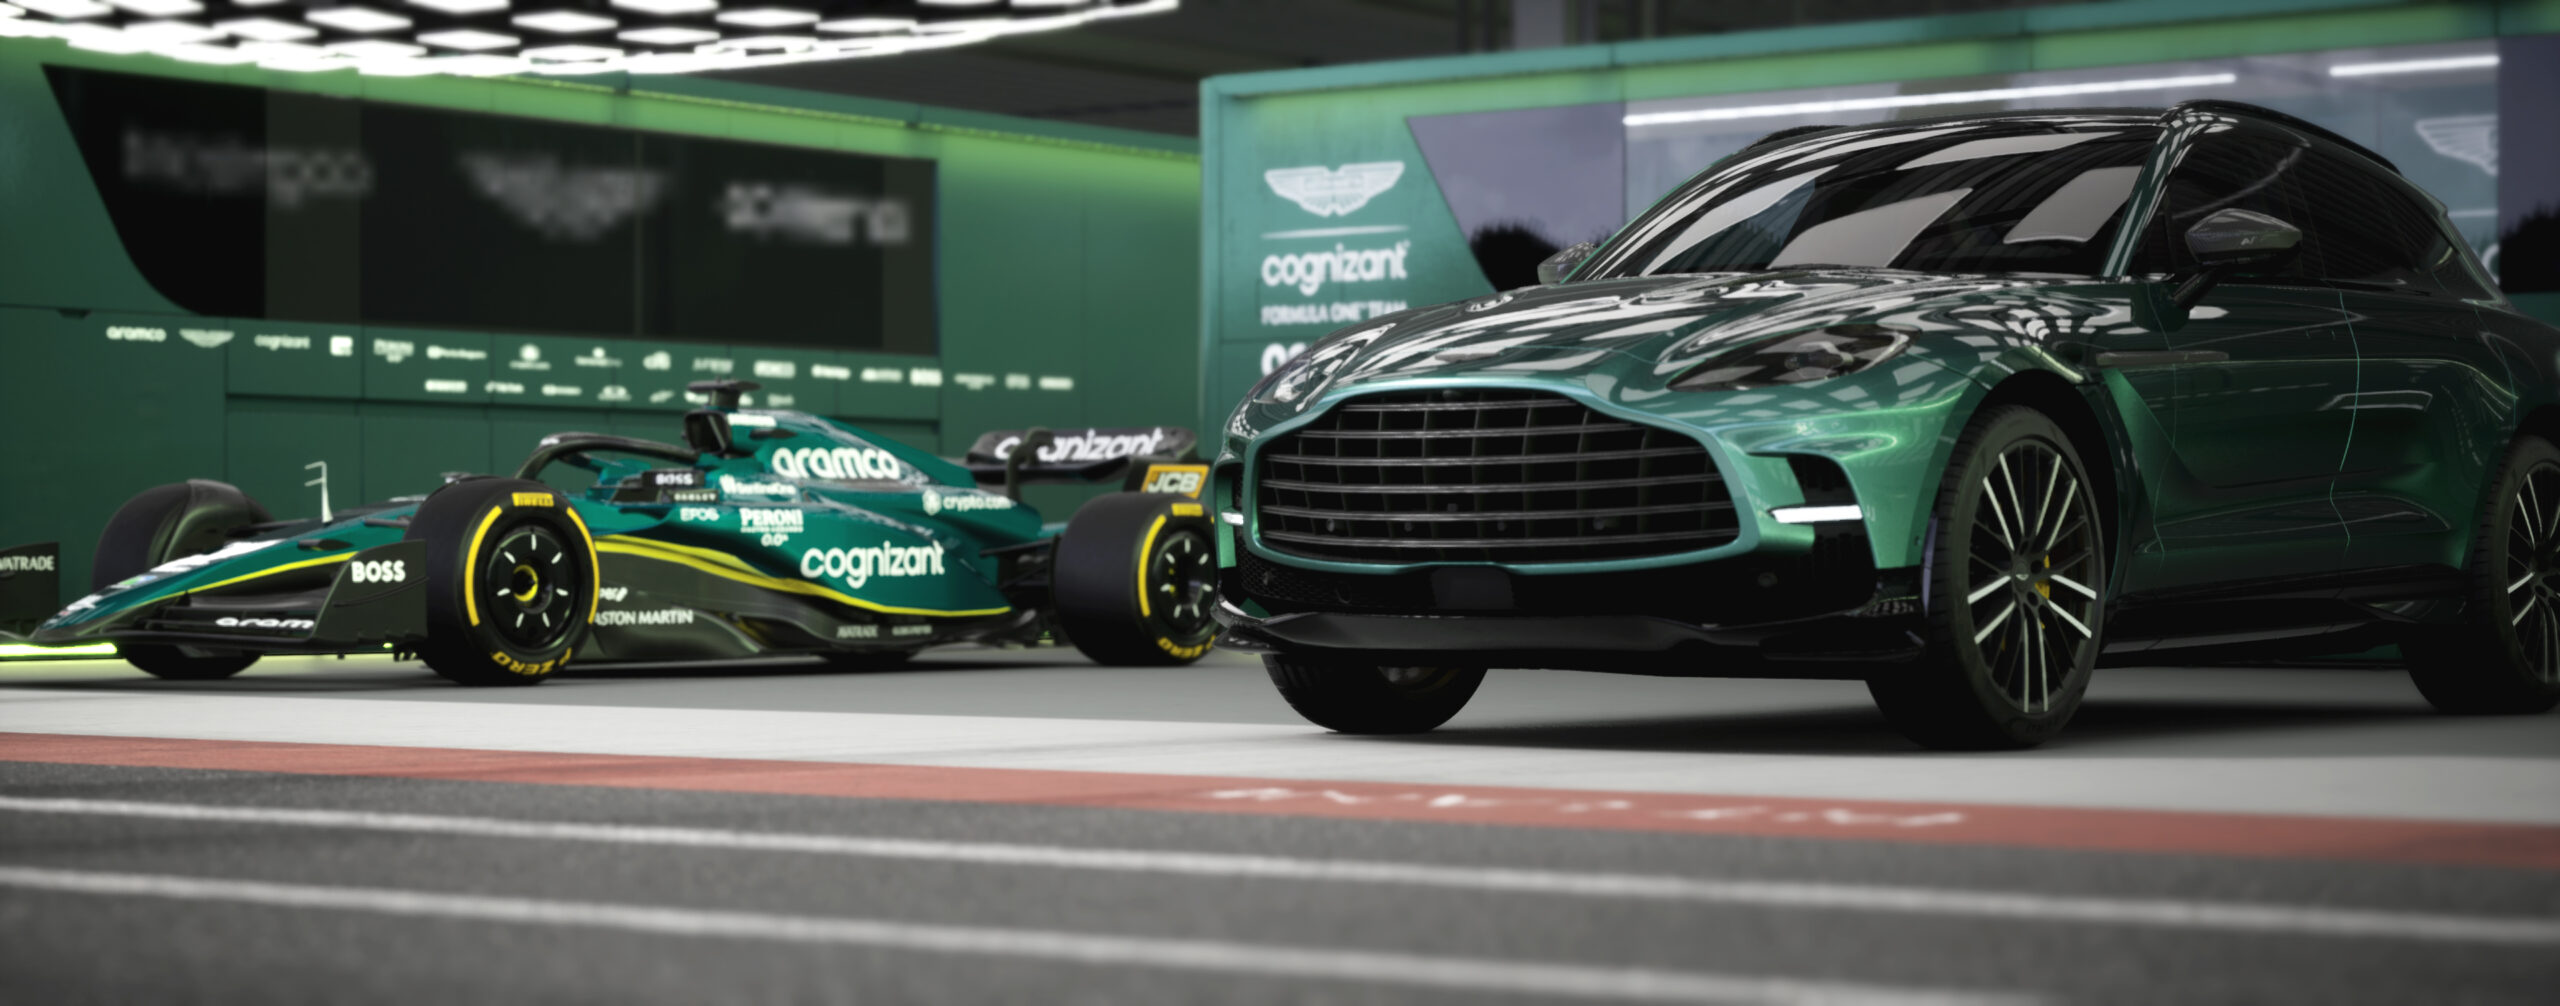 Aston Martin da la bienvenida a los clientes y fanáticos dentro de su garaje de boxes de Fórmula 1 para especificar el auto de sus sueños